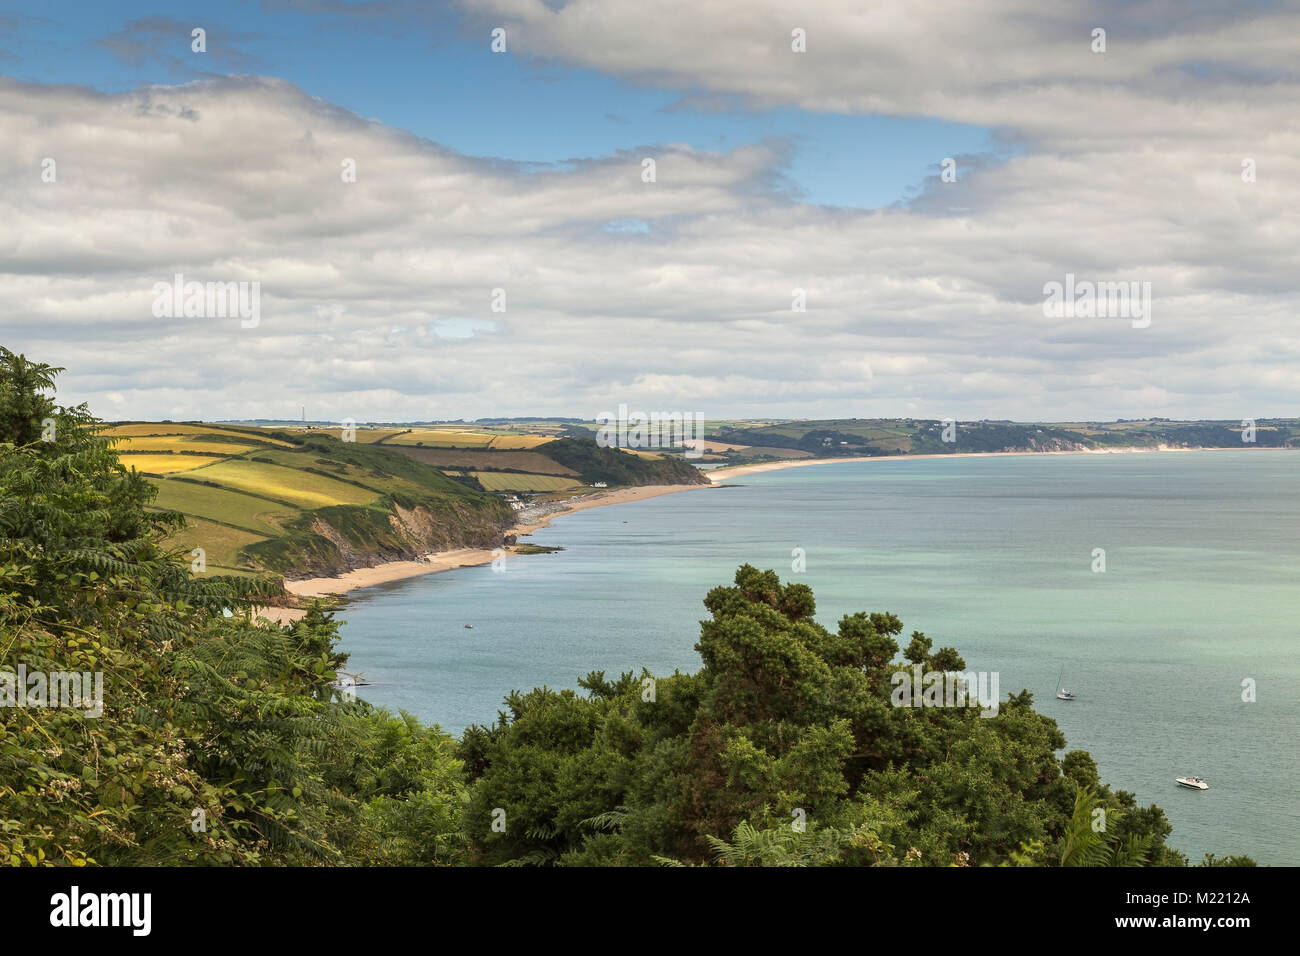 Imagen que muestra la hermosa costa en Beesands, Devon, Inglaterra. Foto de stock